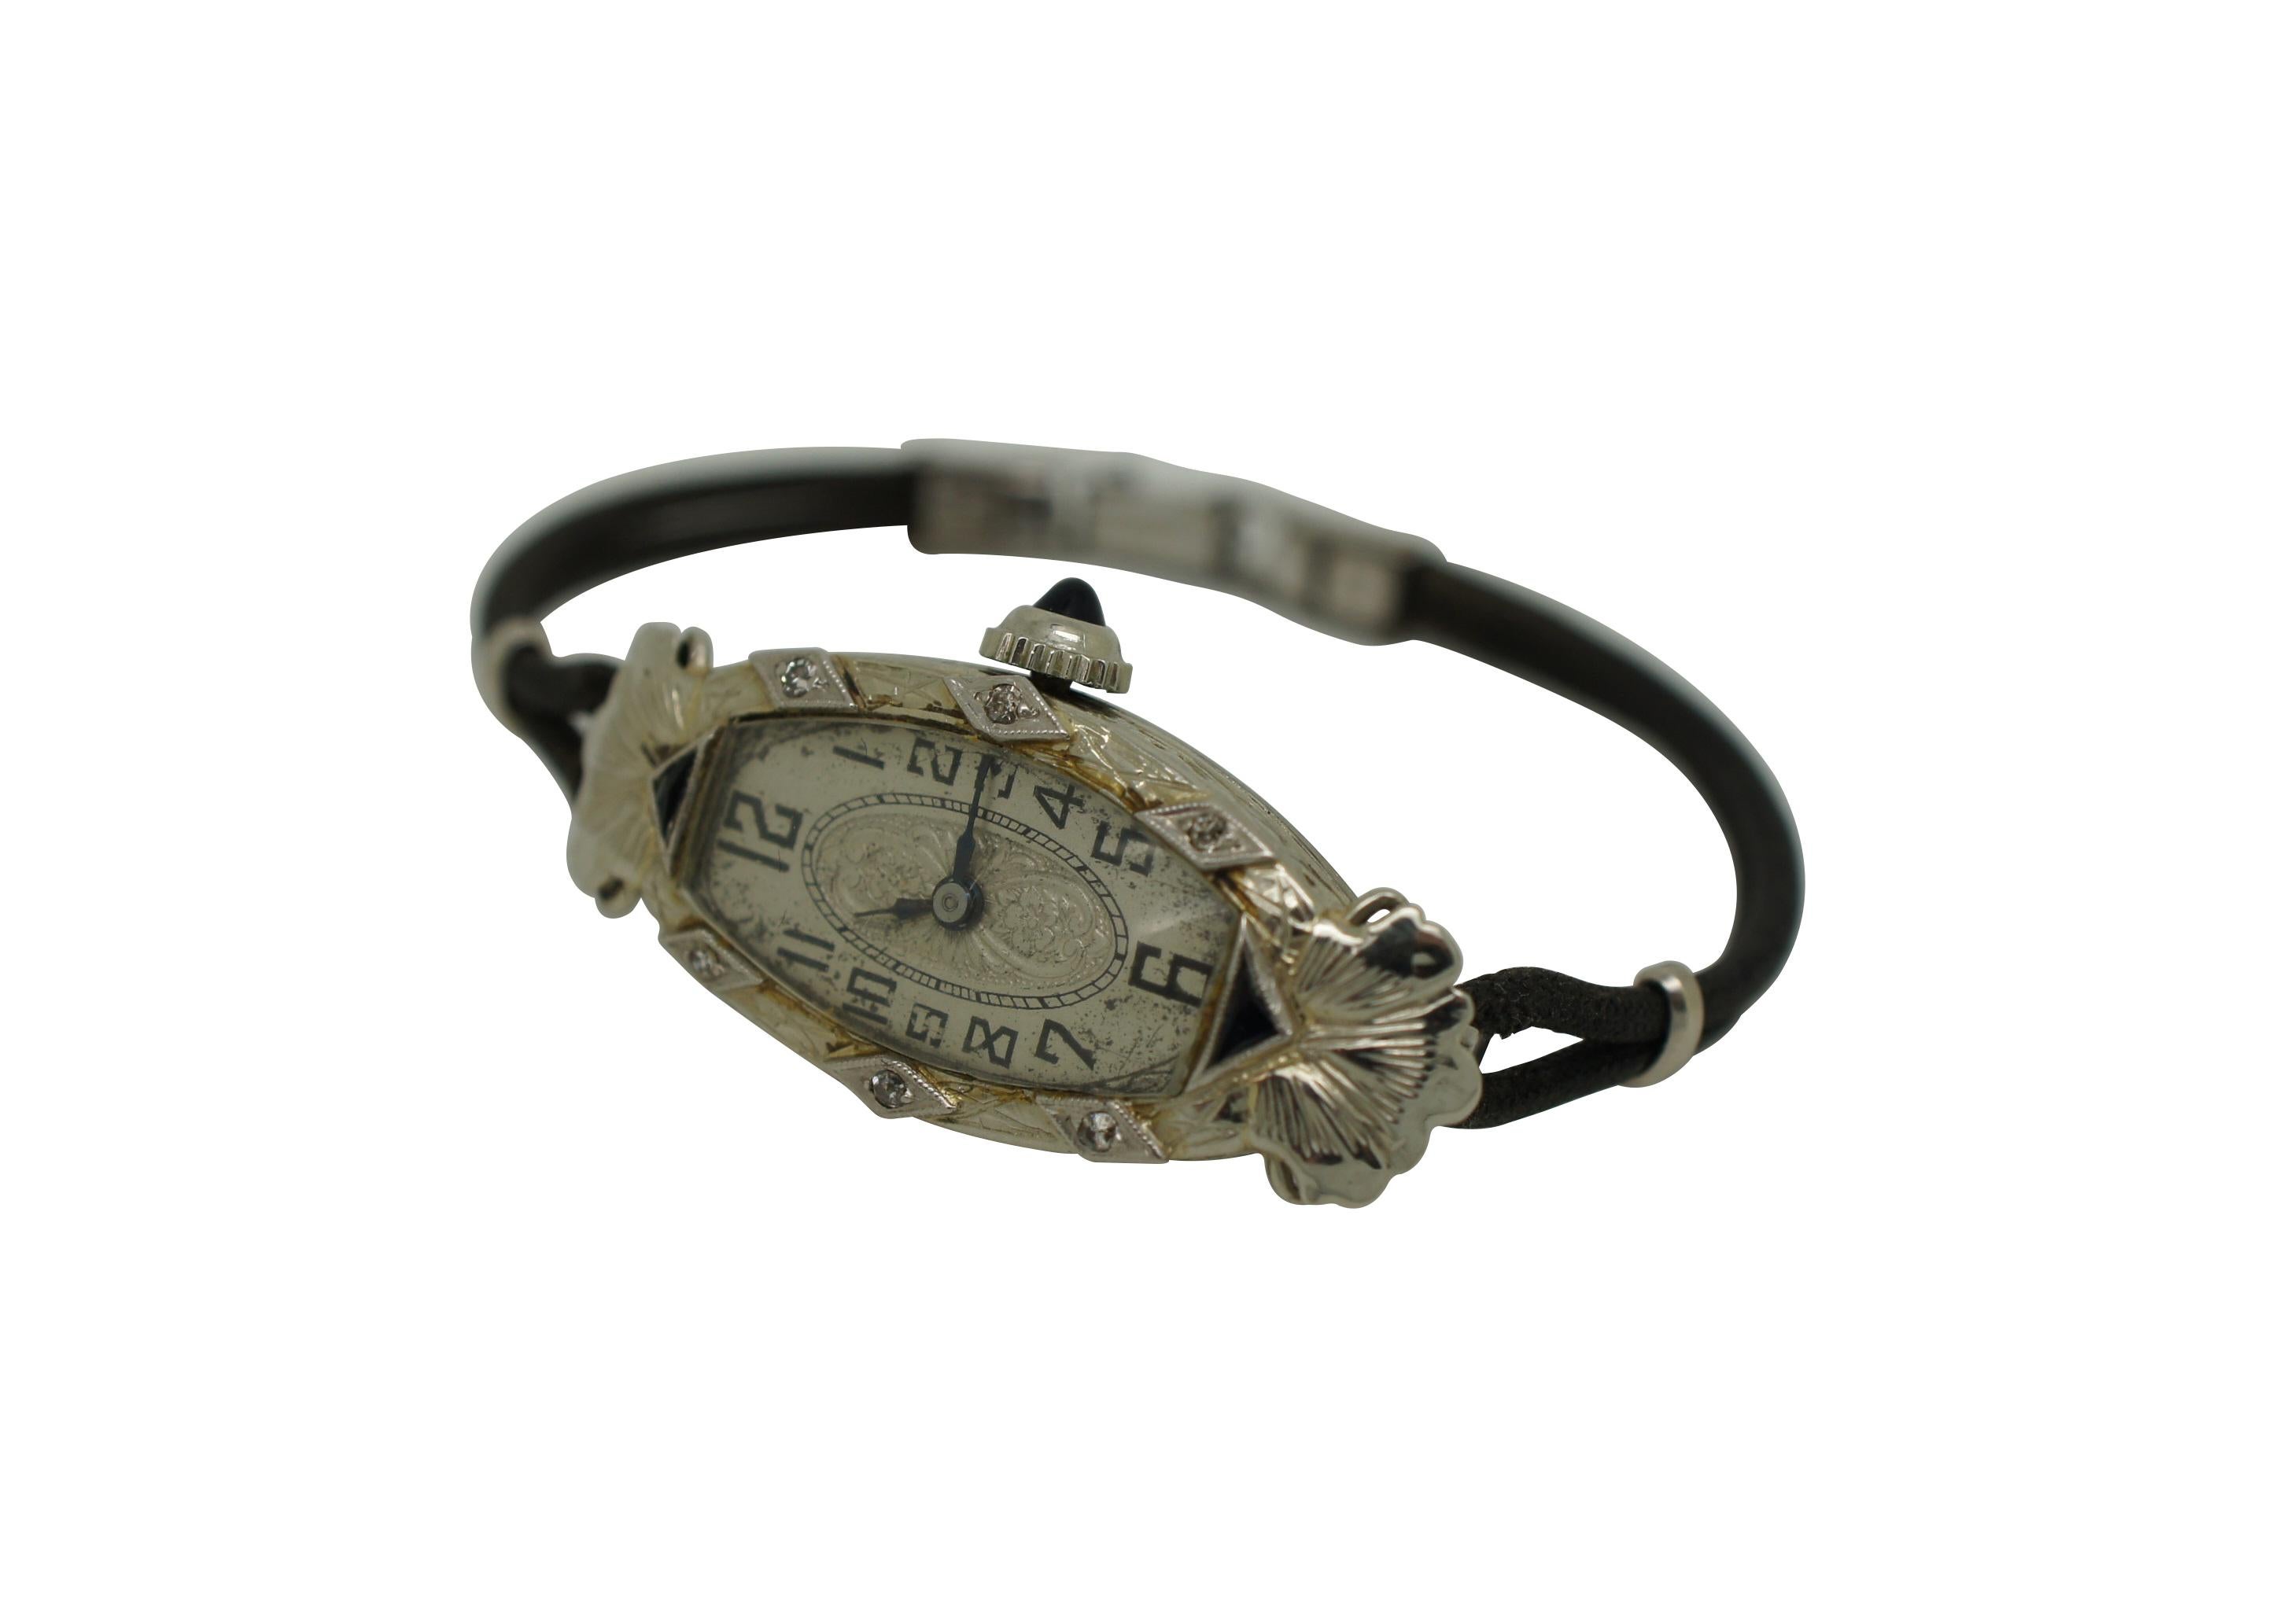 Montre-bracelet art déco pour dames, circa 1920, Hayne Watch Company, 17 rubis, fabrication suisse. Garniture en platine / boîtier en or blanc 18 carats. Forme ovale carrée au style art déco complexe - cadre gravé rehaussé de formes de diamants et